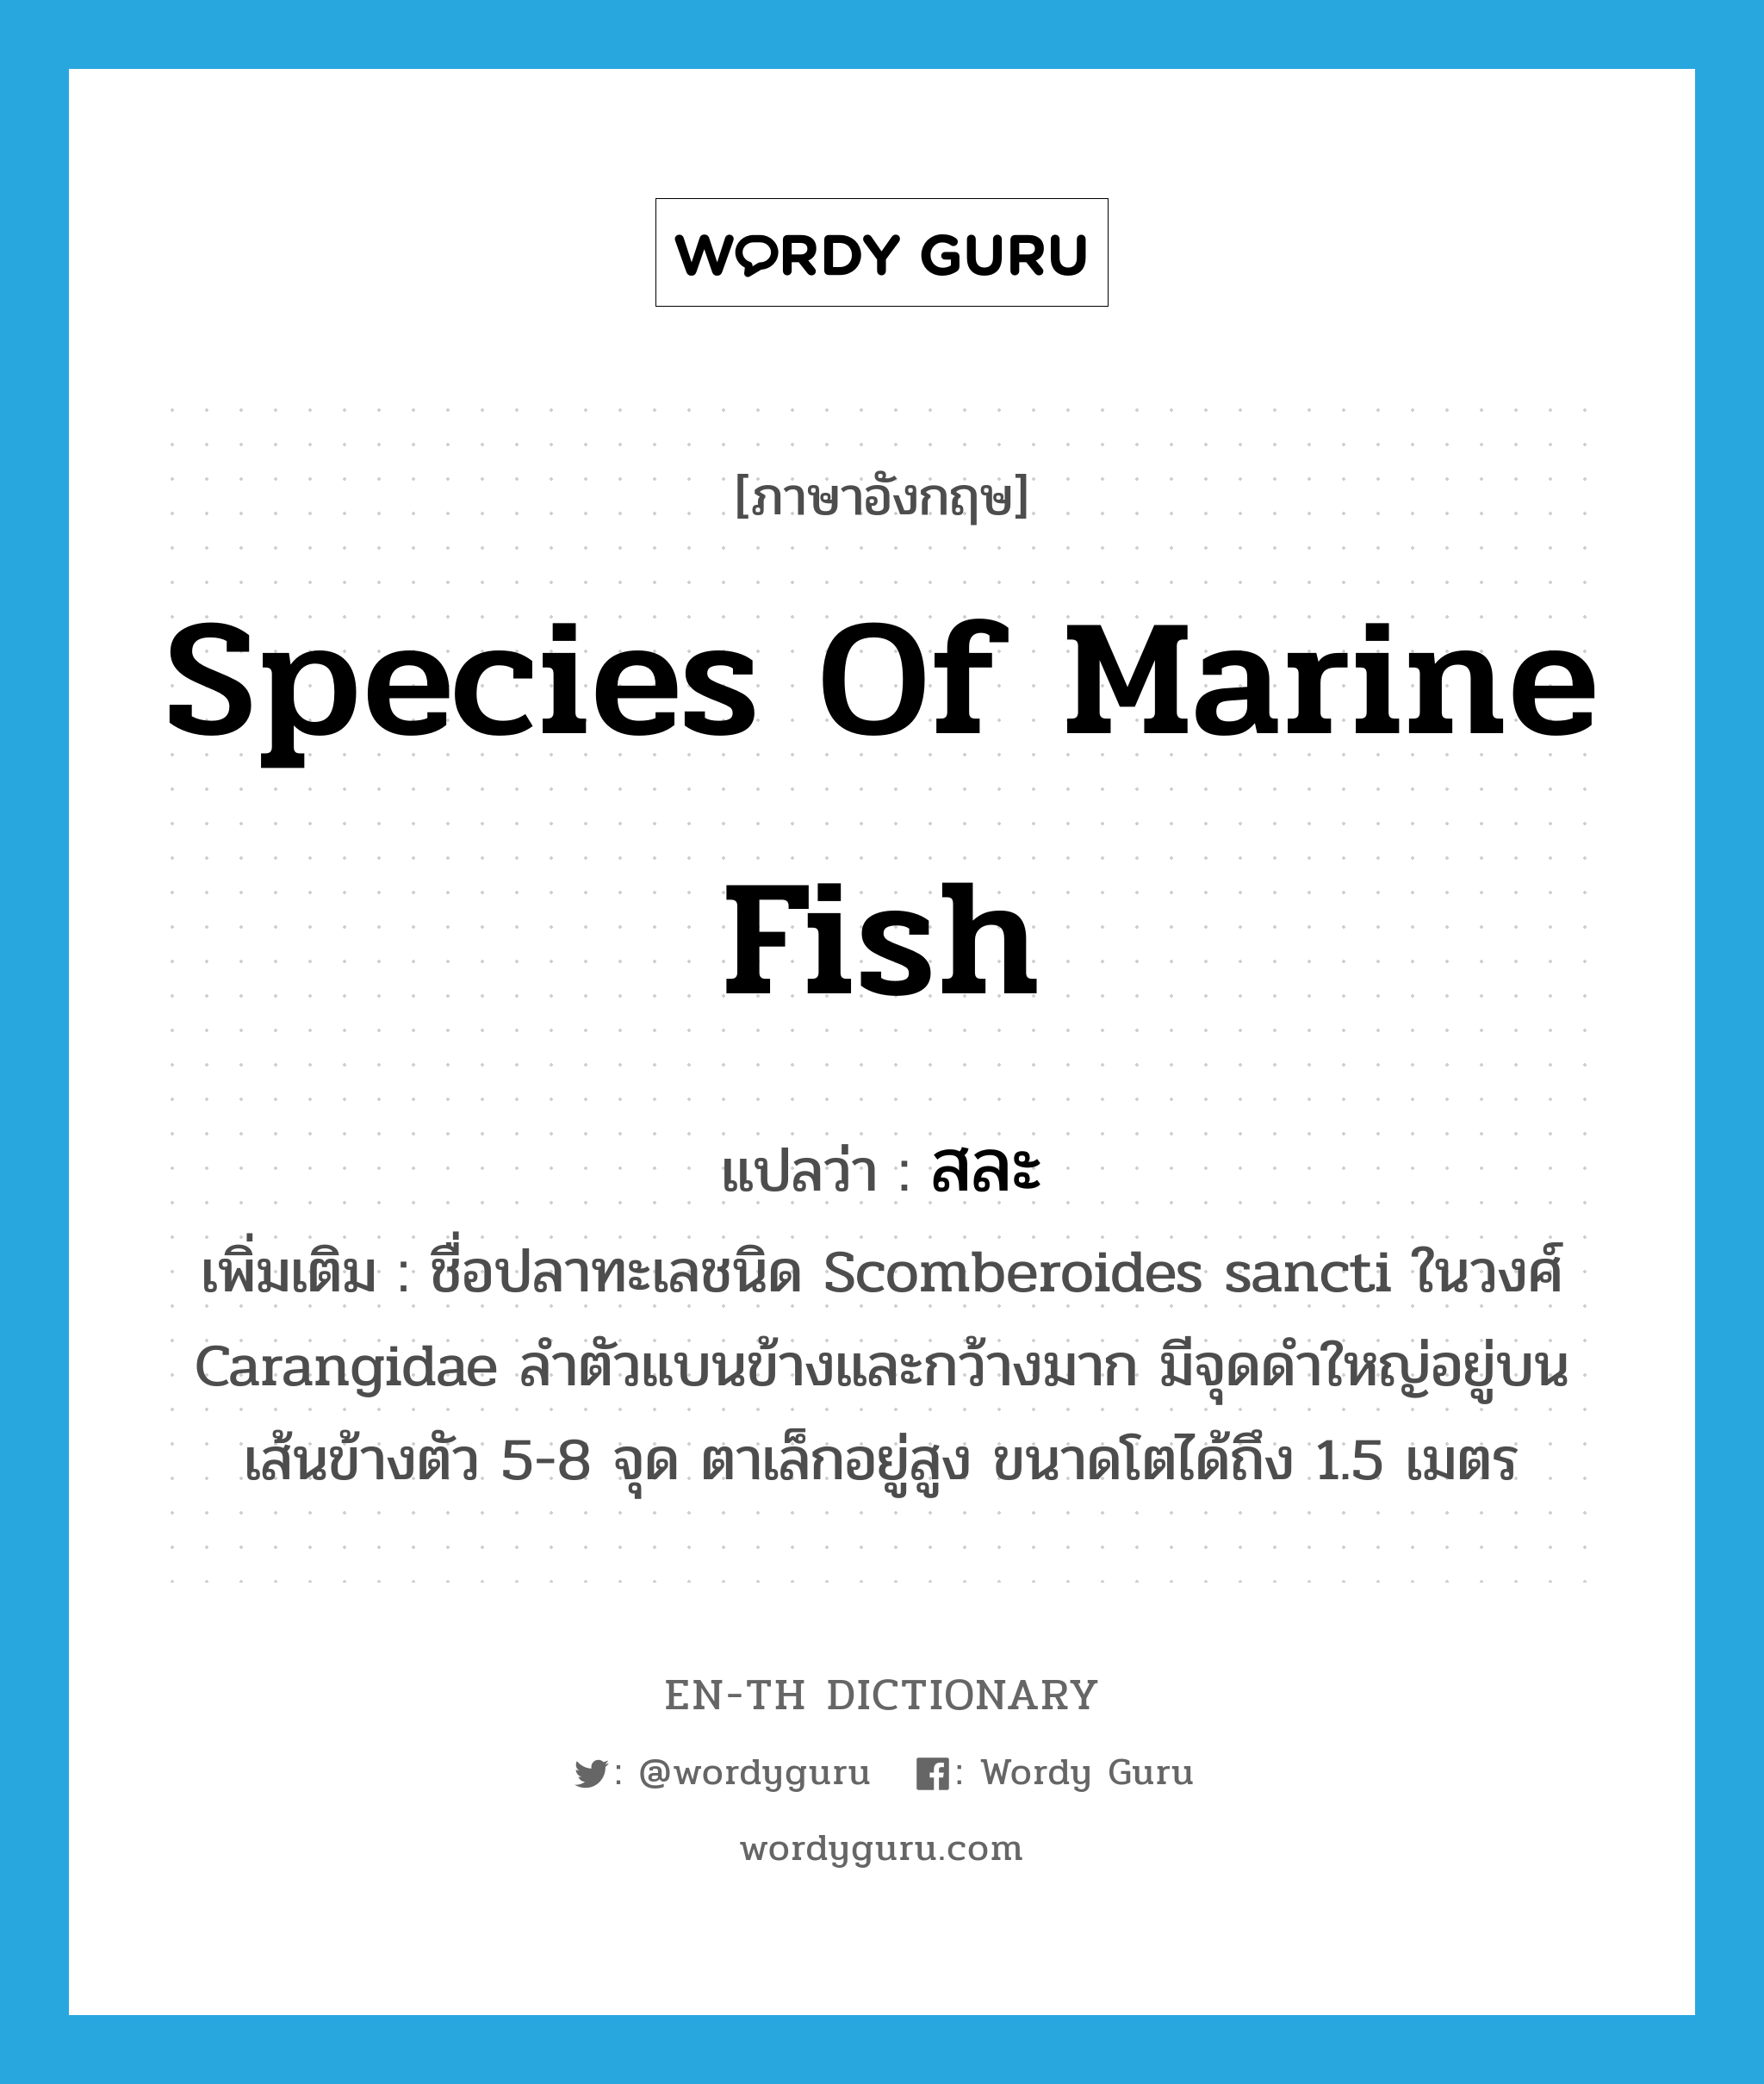 สละ ภาษาอังกฤษ?, คำศัพท์ภาษาอังกฤษ สละ แปลว่า species of marine fish ประเภท N เพิ่มเติม ชื่อปลาทะเลชนิด Scomberoides sancti ในวงศ์ Carangidae ลำตัวแบนข้างและกว้างมาก มีจุดดำใหญ่อยู่บนเส้นข้างตัว 5-8 จุด ตาเล็กอยู่สูง ขนาดโตได้ถึง 1.5 เมตร หมวด N